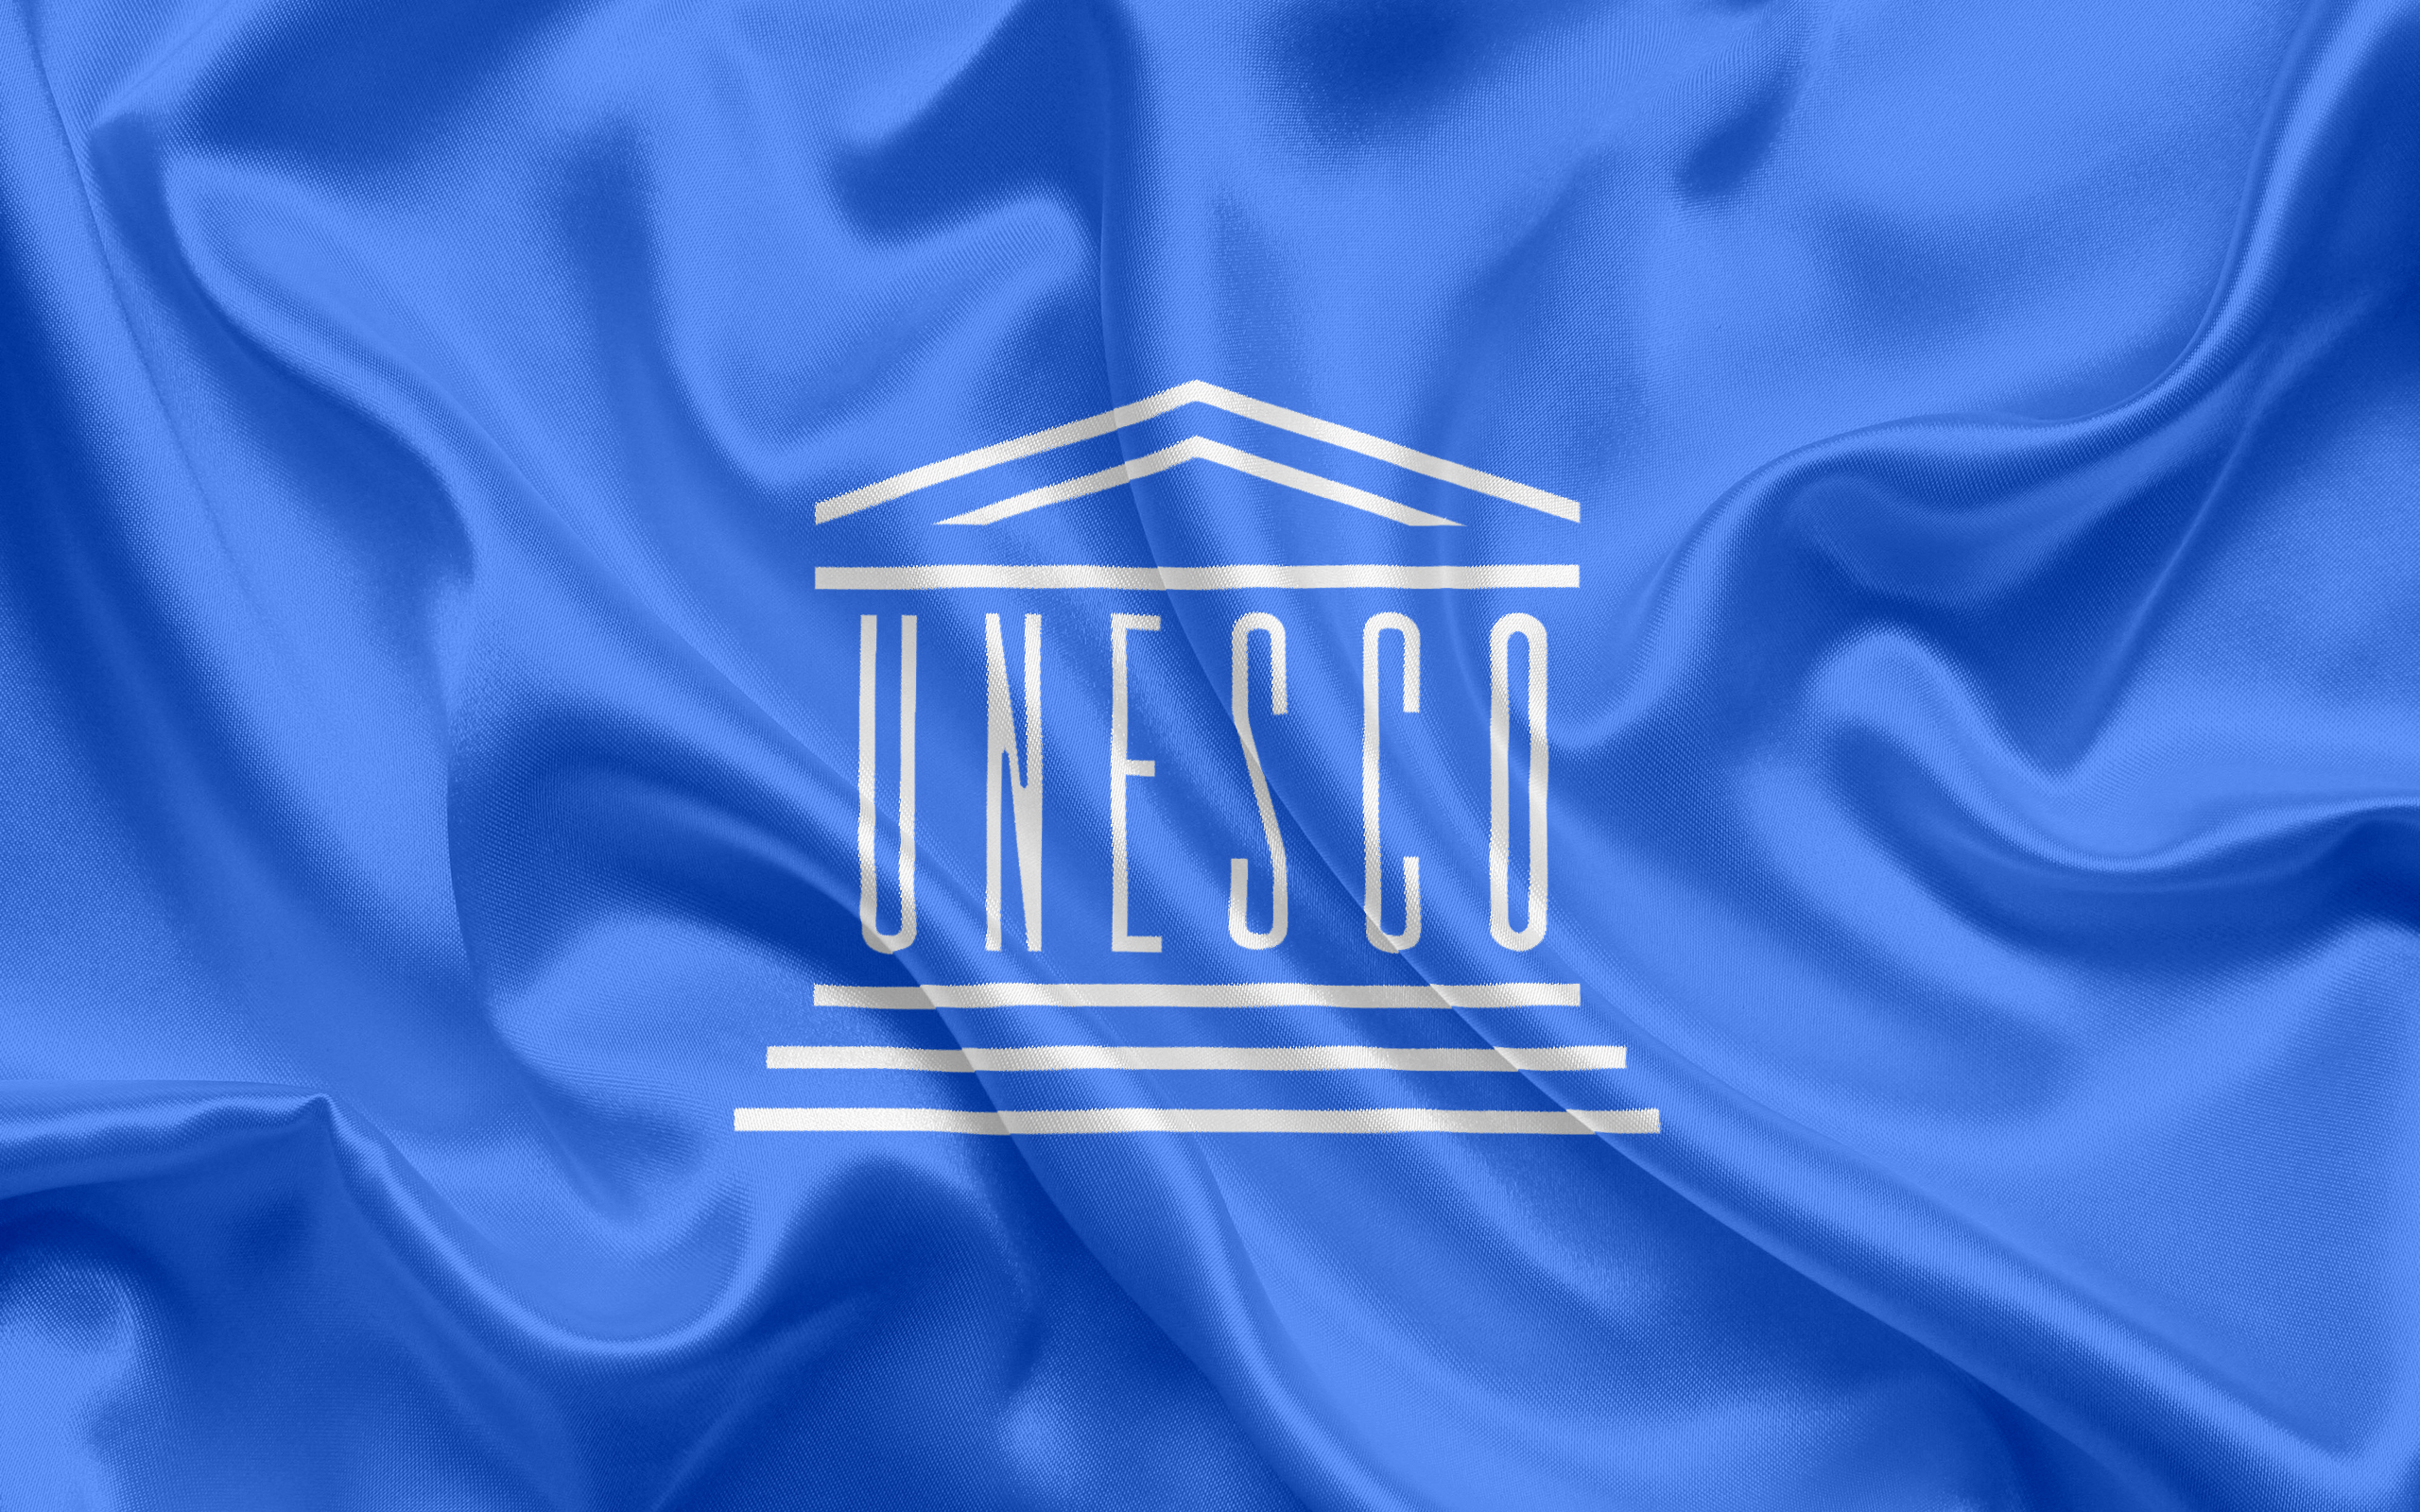 2017/10/unesco-flag-symbols-emblem-logo-unesco.jpg